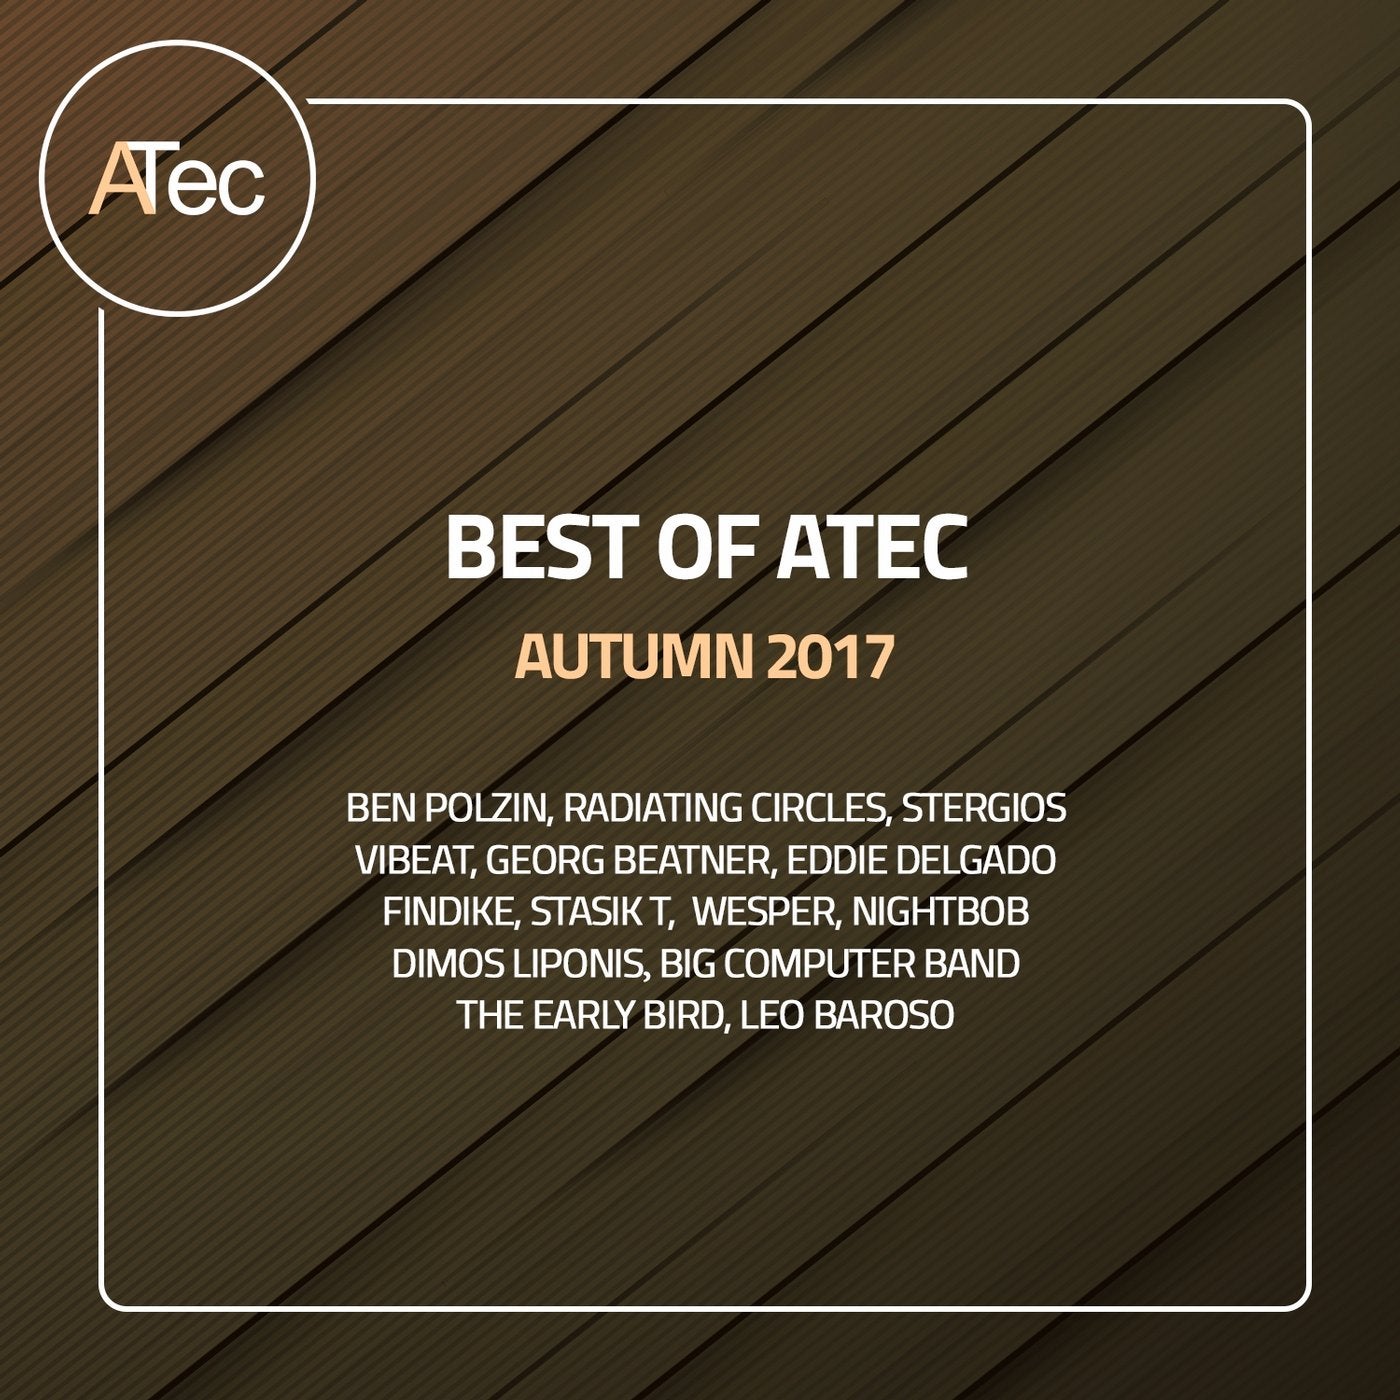 Best of Atec Autumn 2017